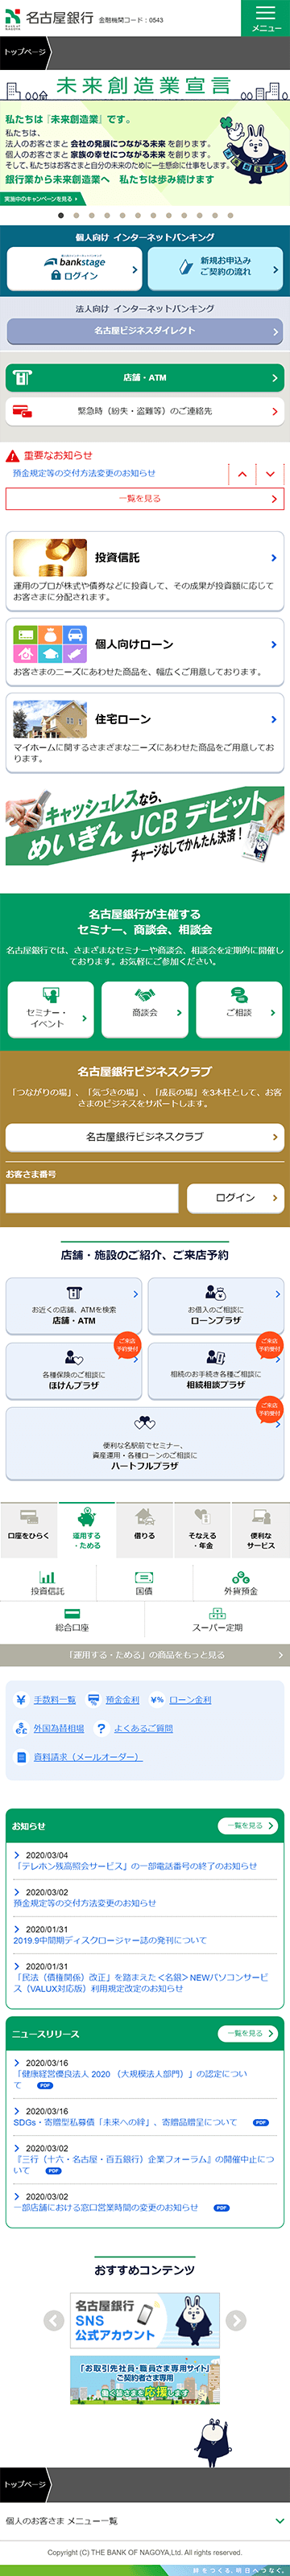 名古屋銀行のホームページ　スマホ版のキャプチャ